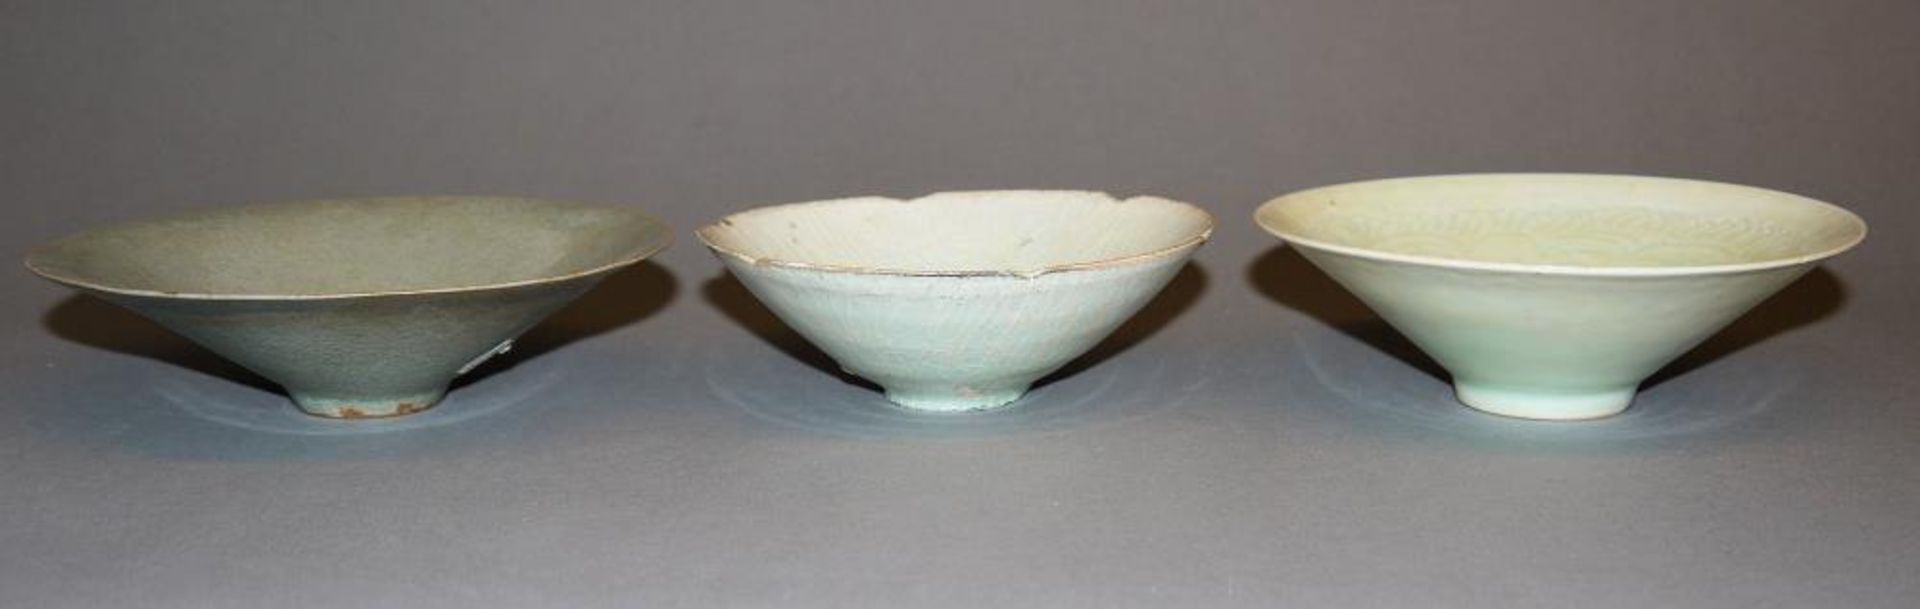 Drei Schalen in Yingqing-Porzellan ab Song-Dynastie, China 12. Jh. oder später Schale mit - Image 2 of 3